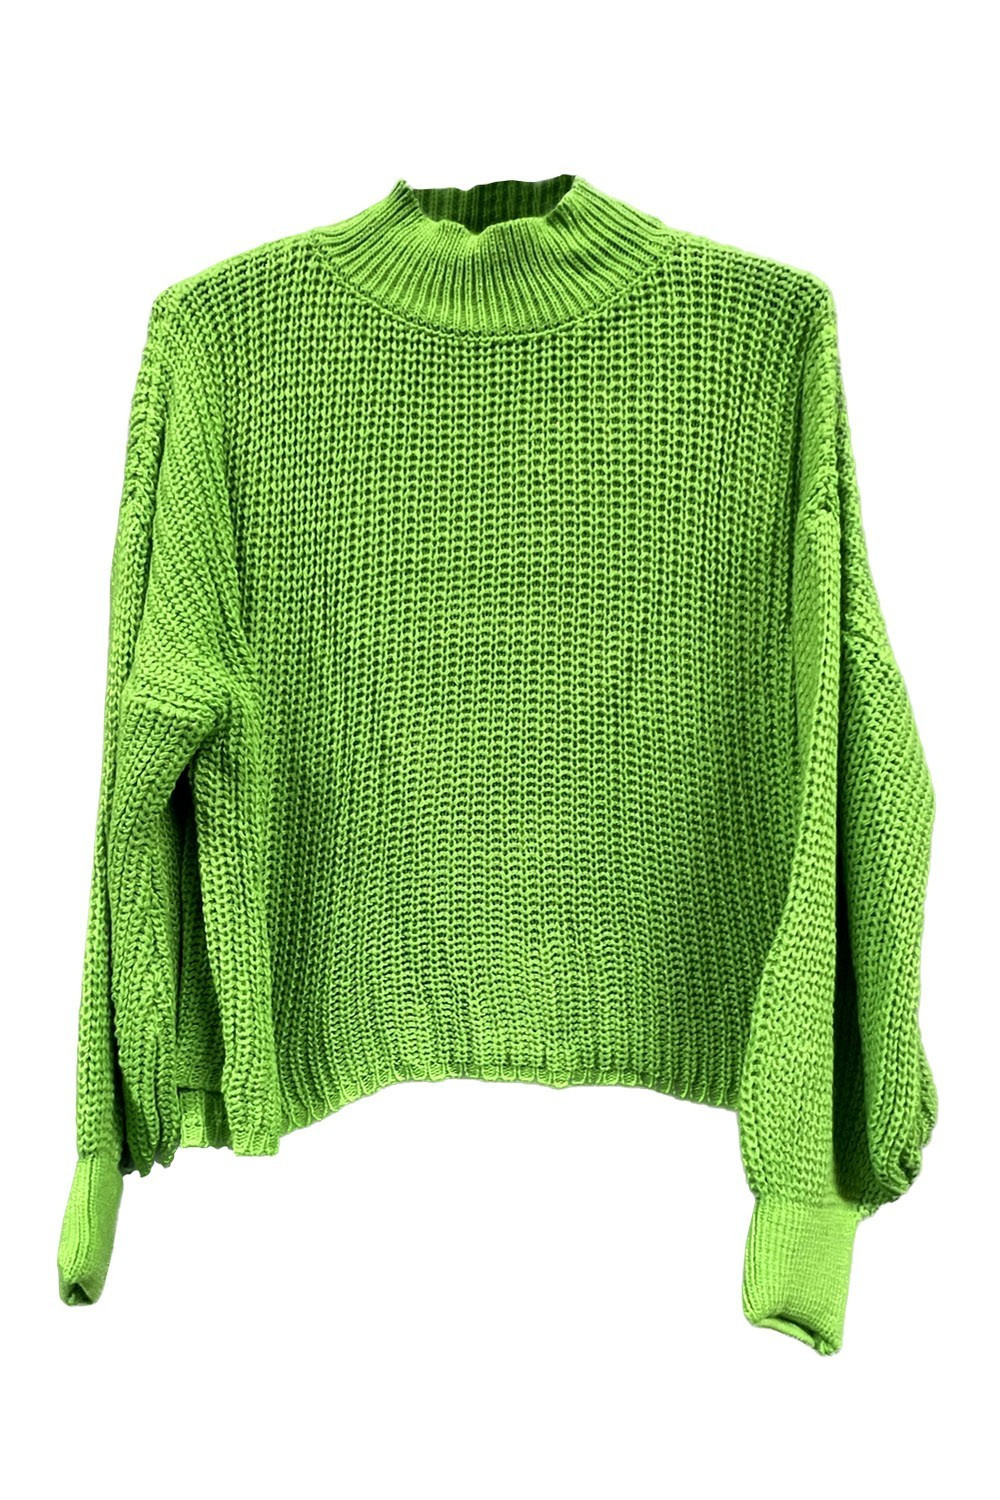 Tie knit sweater - Online sale of women's fashion